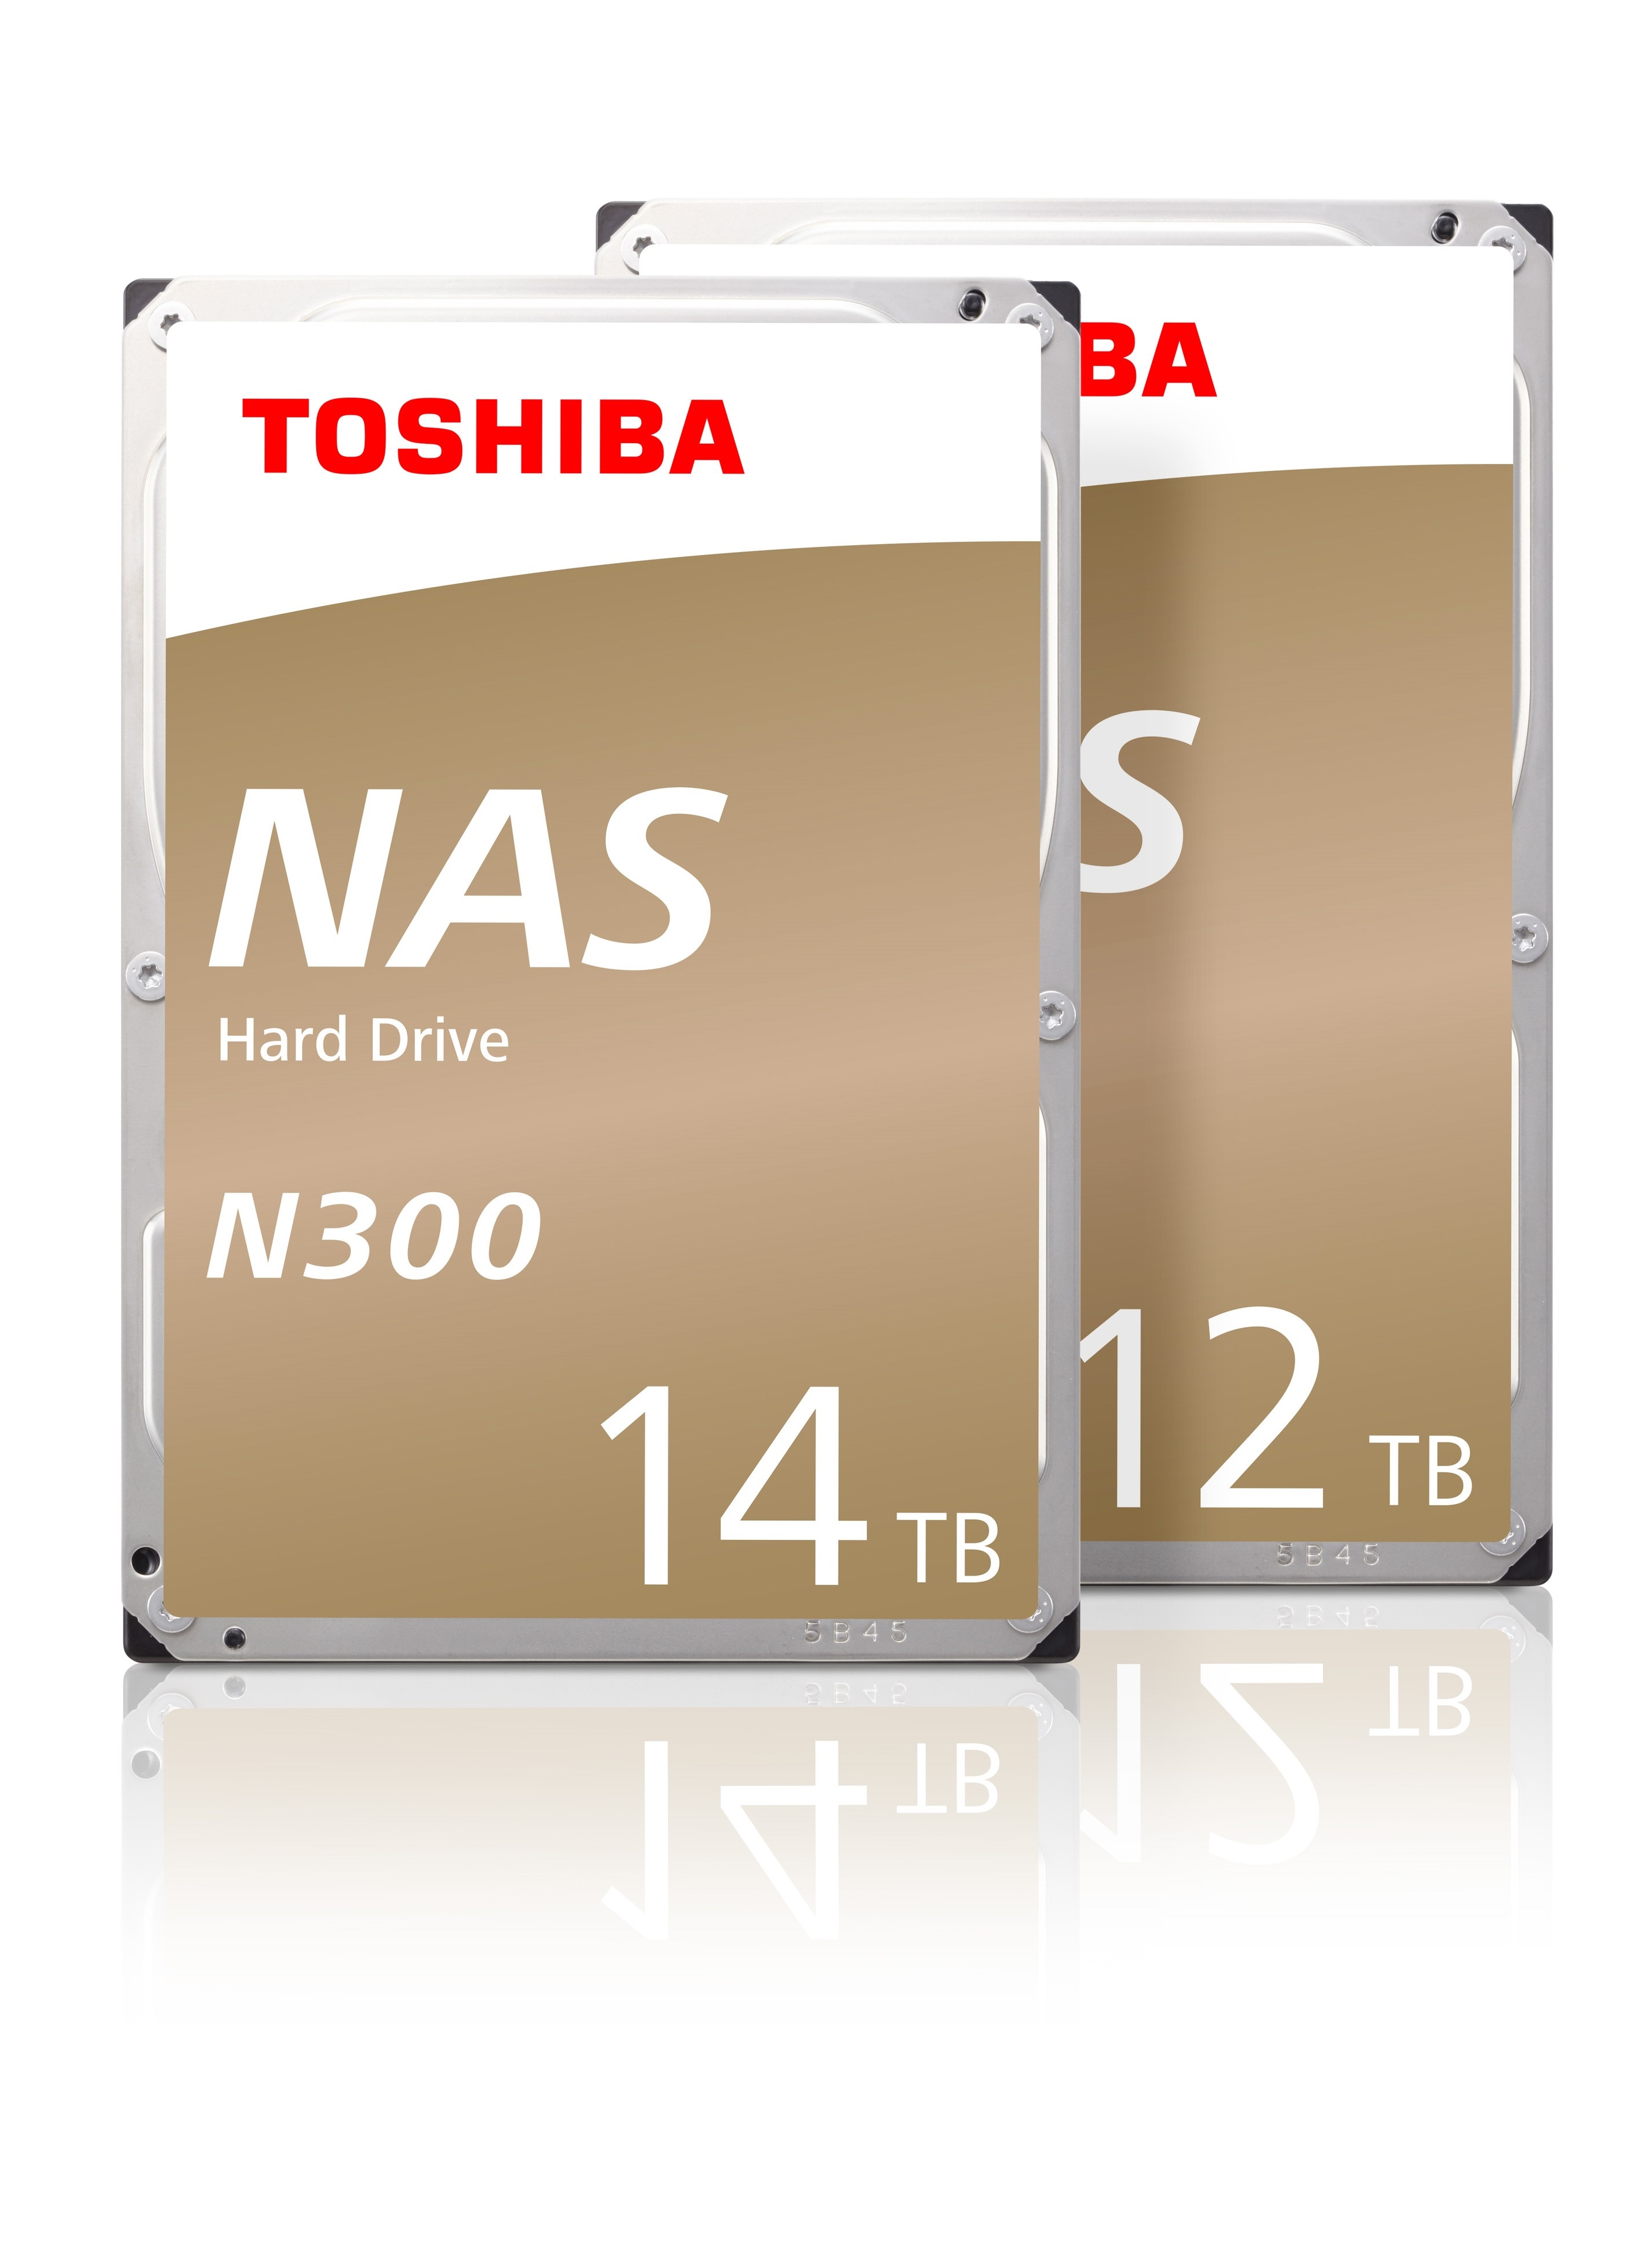 TOSHIBA N300 NAS硬碟 推出全新12TB與14TB氦氣填充封裝機型